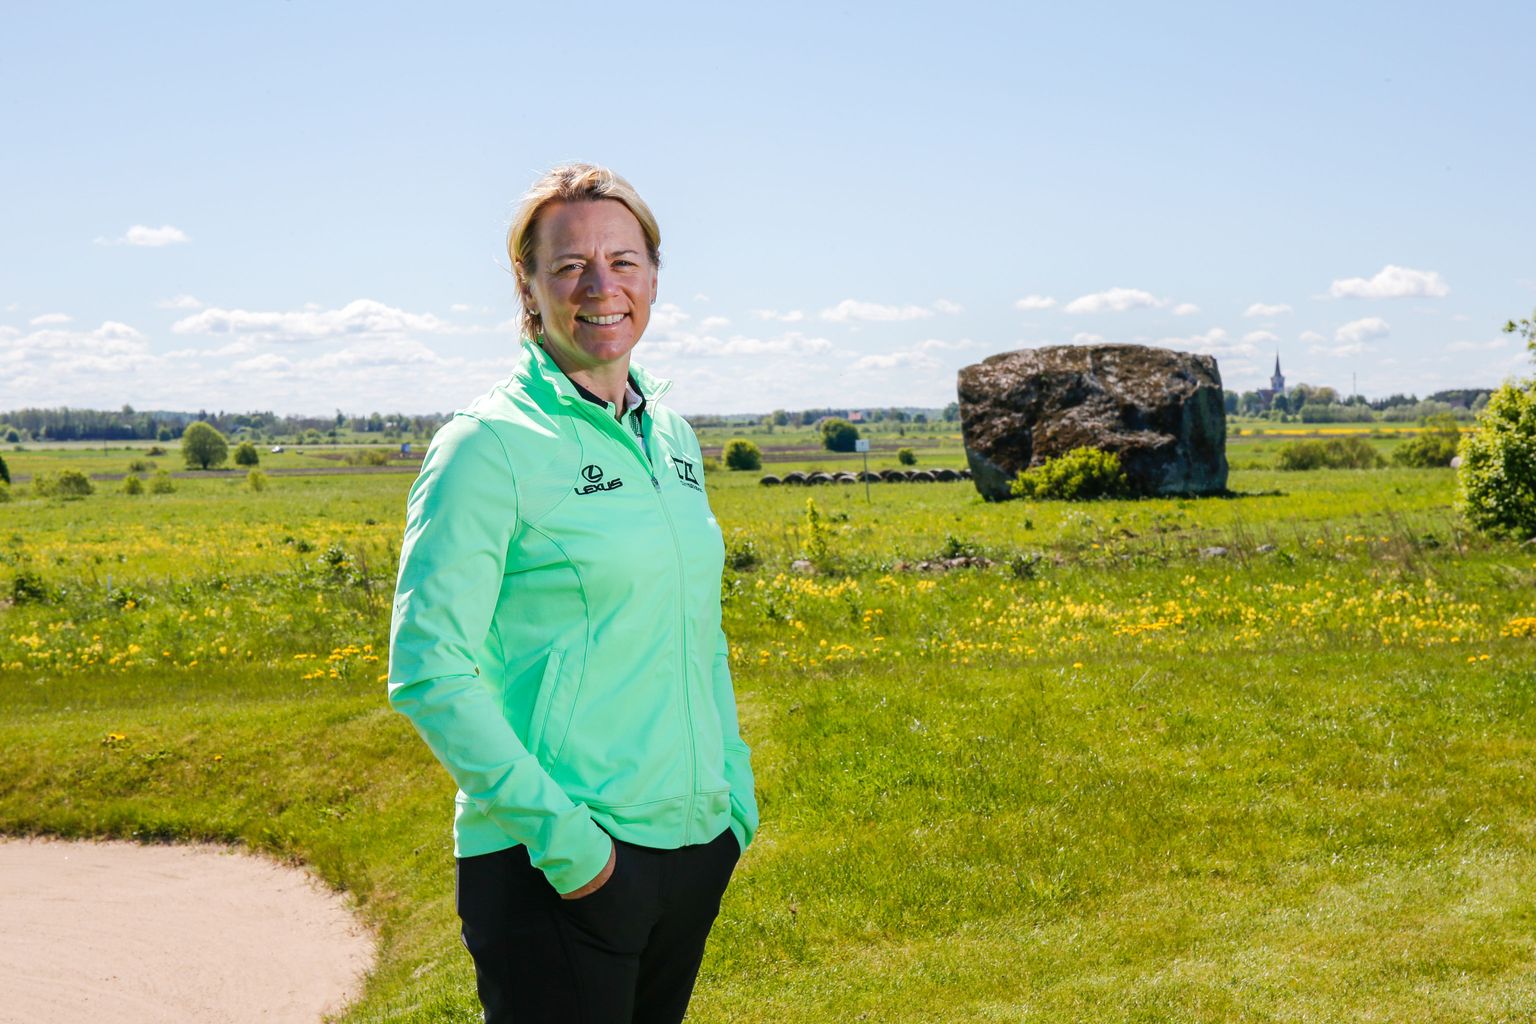 Golfilegend Annika Sörenstam disainib uue golfiväljaku nii, et mängijad saaksid nautida nii loodust, kuue meetri kõrgust rändrahnu kui ajaloolisi kivikalmeid.